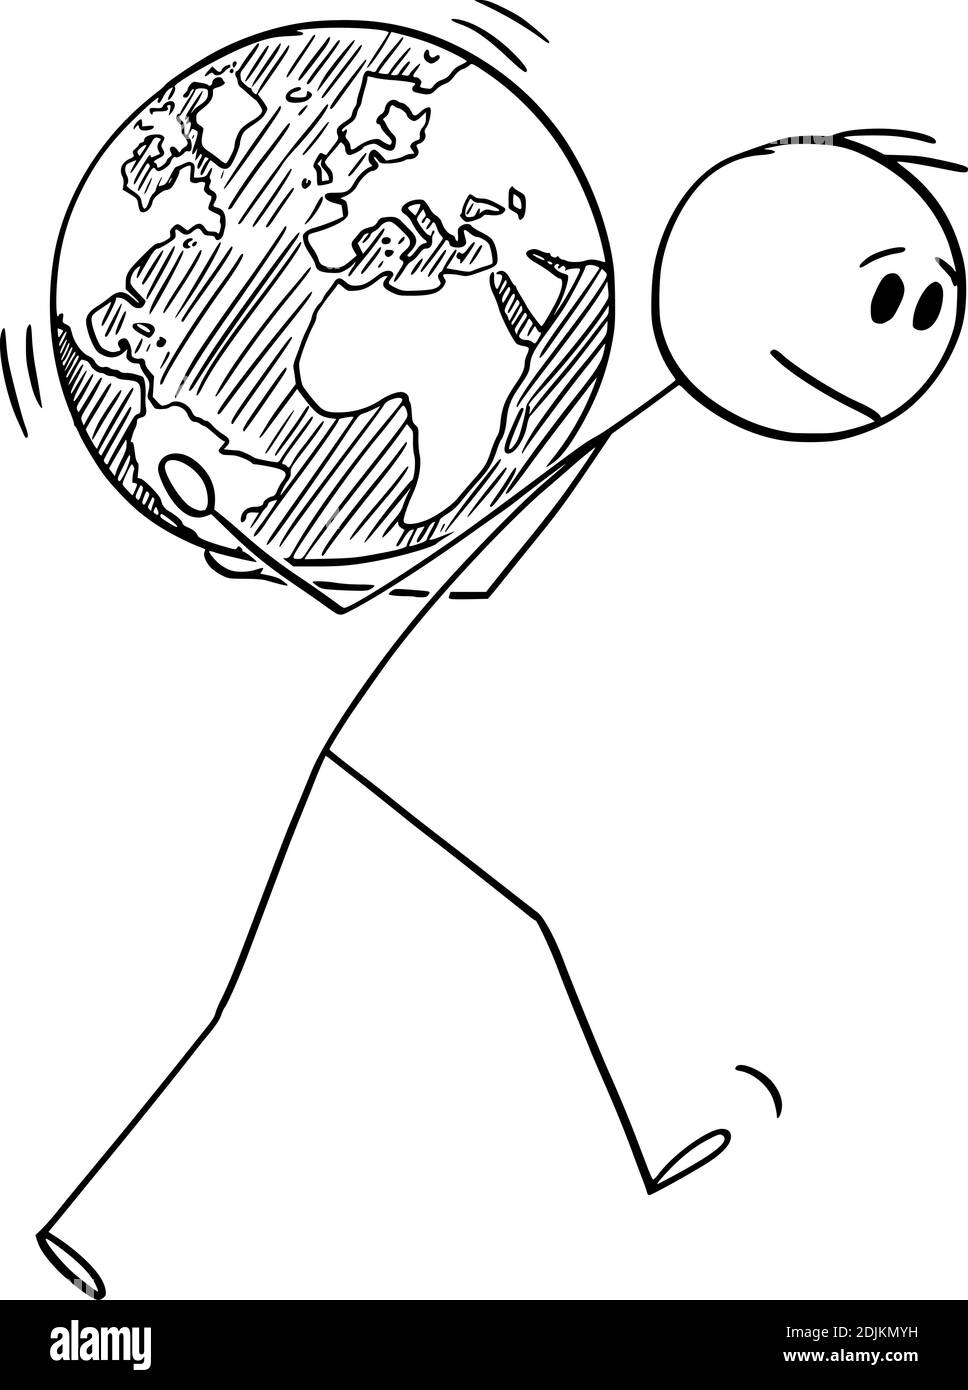 Vektor Cartoon Stick Figur Abbildung des Menschen trägt Planeten Erde Globus auf seinem Rücken. Konzept der menschlichen Umweltverantwortung, Ökologie und Umweltschutz. Stock Vektor